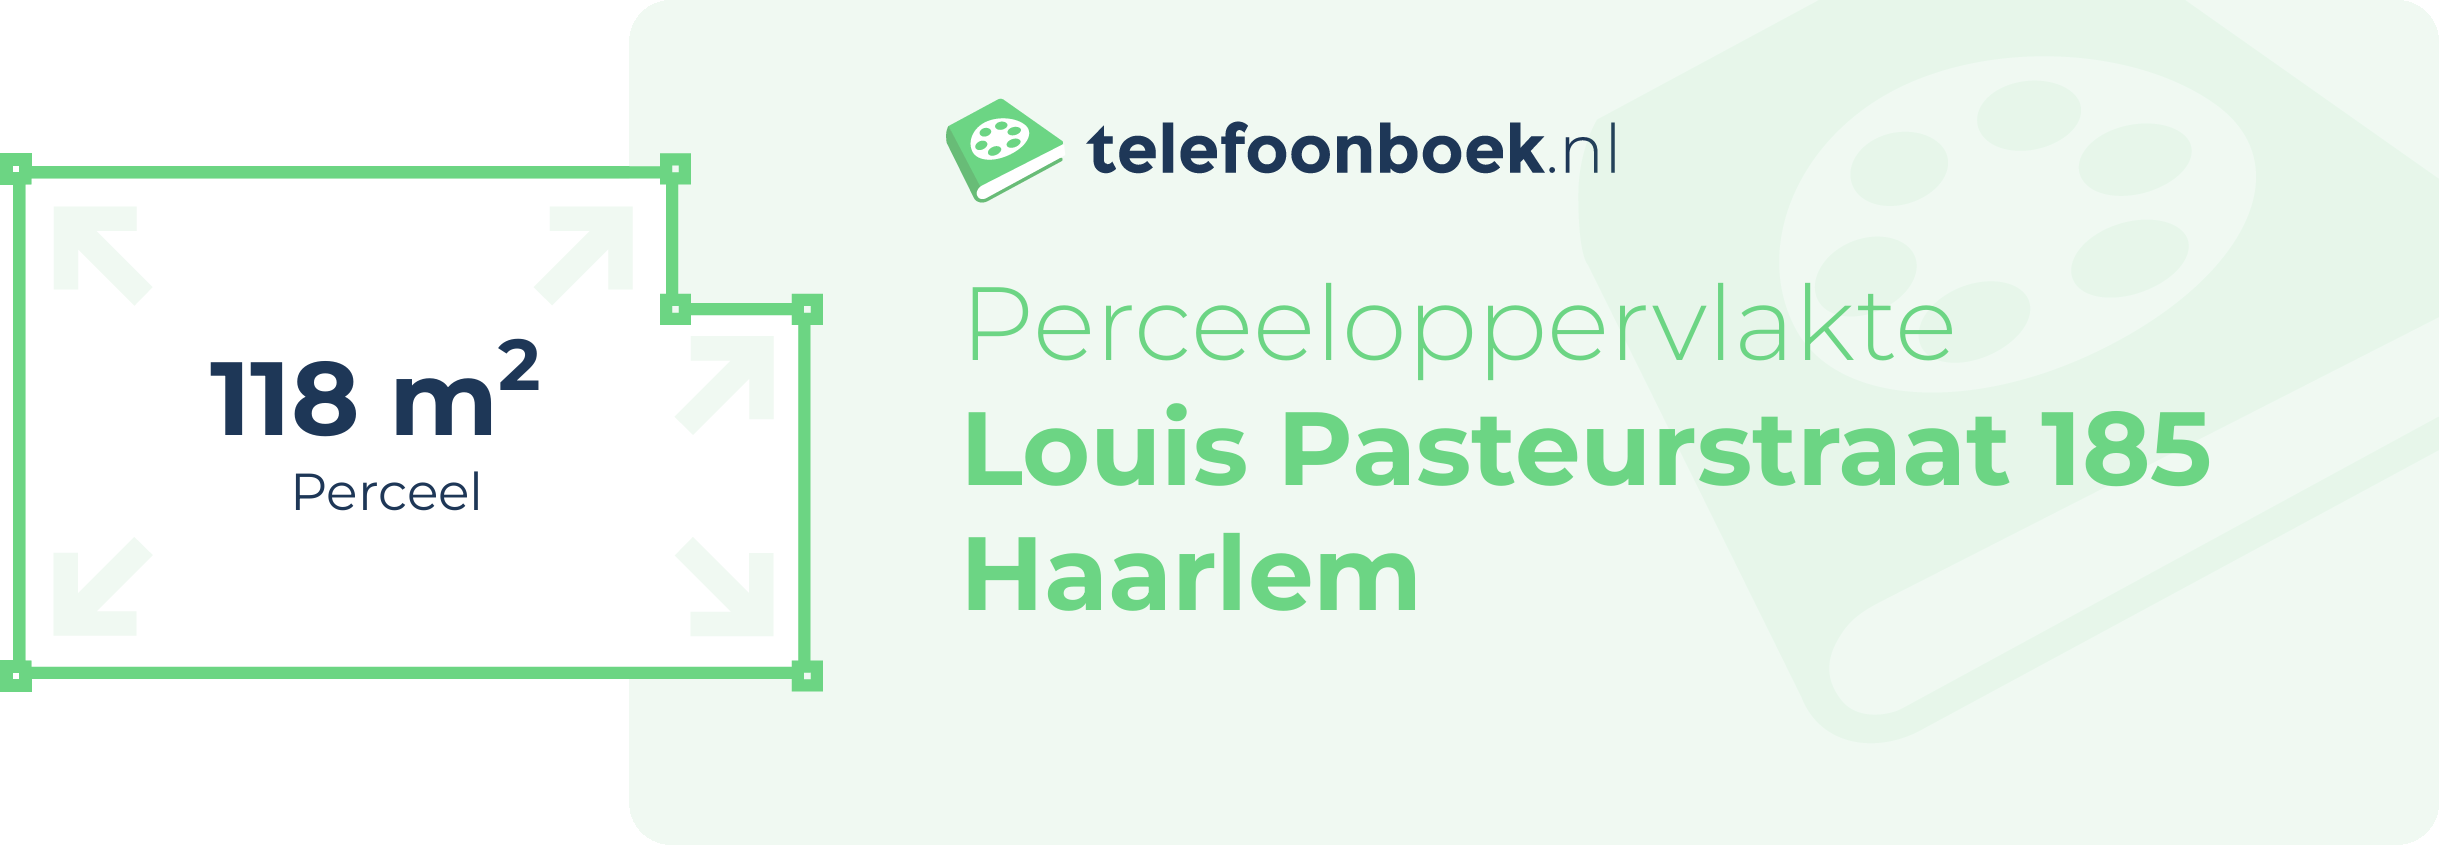 Perceeloppervlakte Louis Pasteurstraat 185 Haarlem